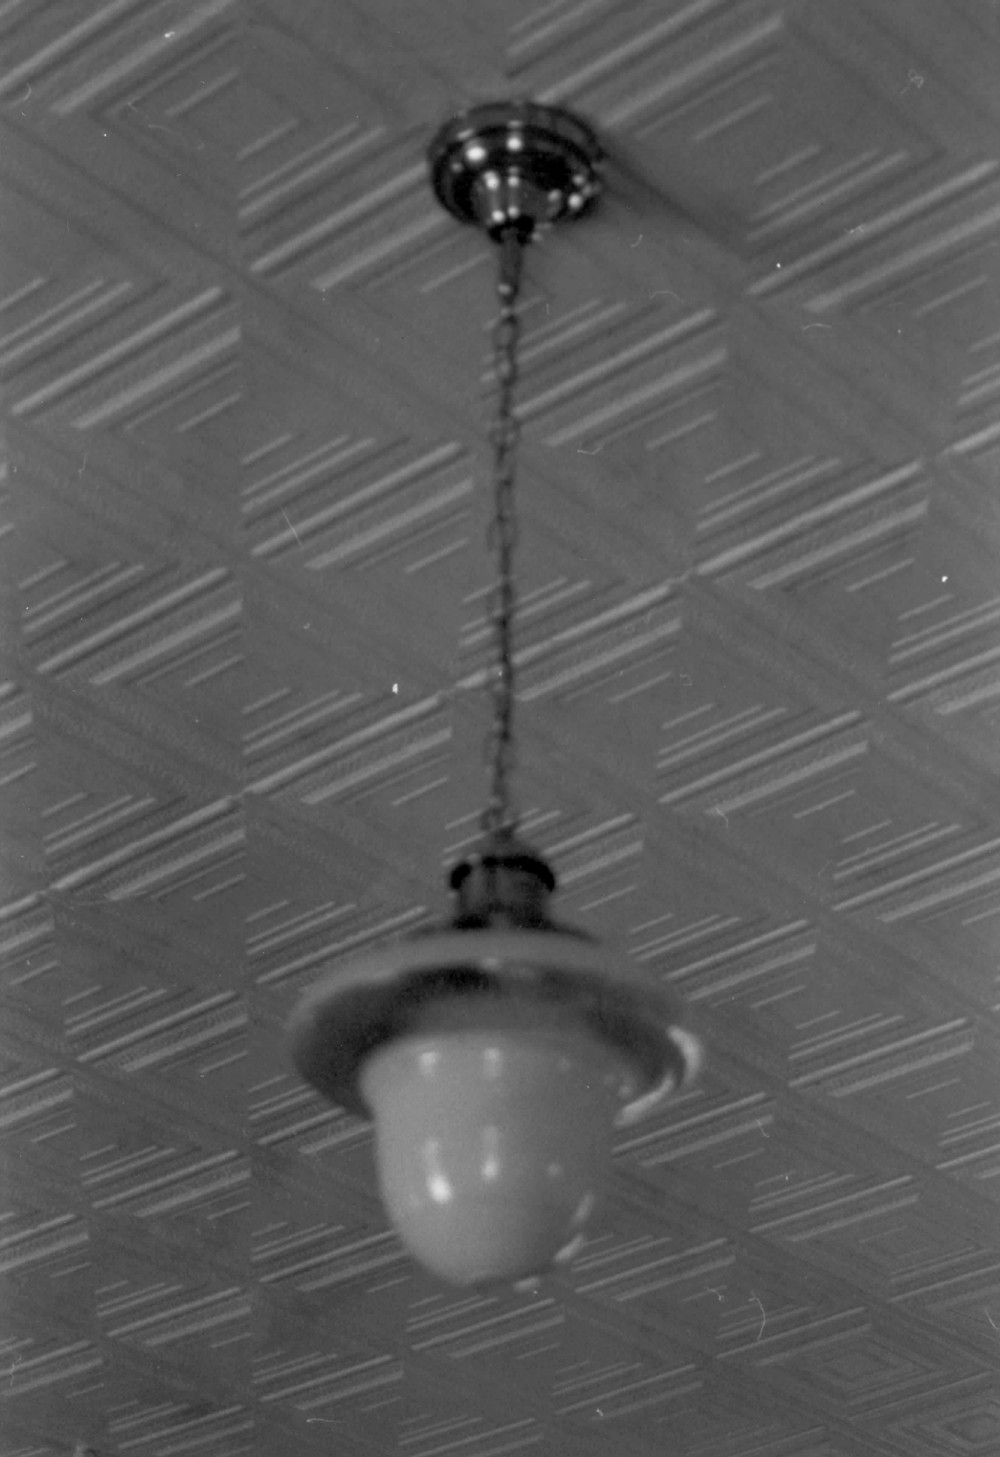 Damascus Grade School, Damascus Ohio Ceiling light (1989)